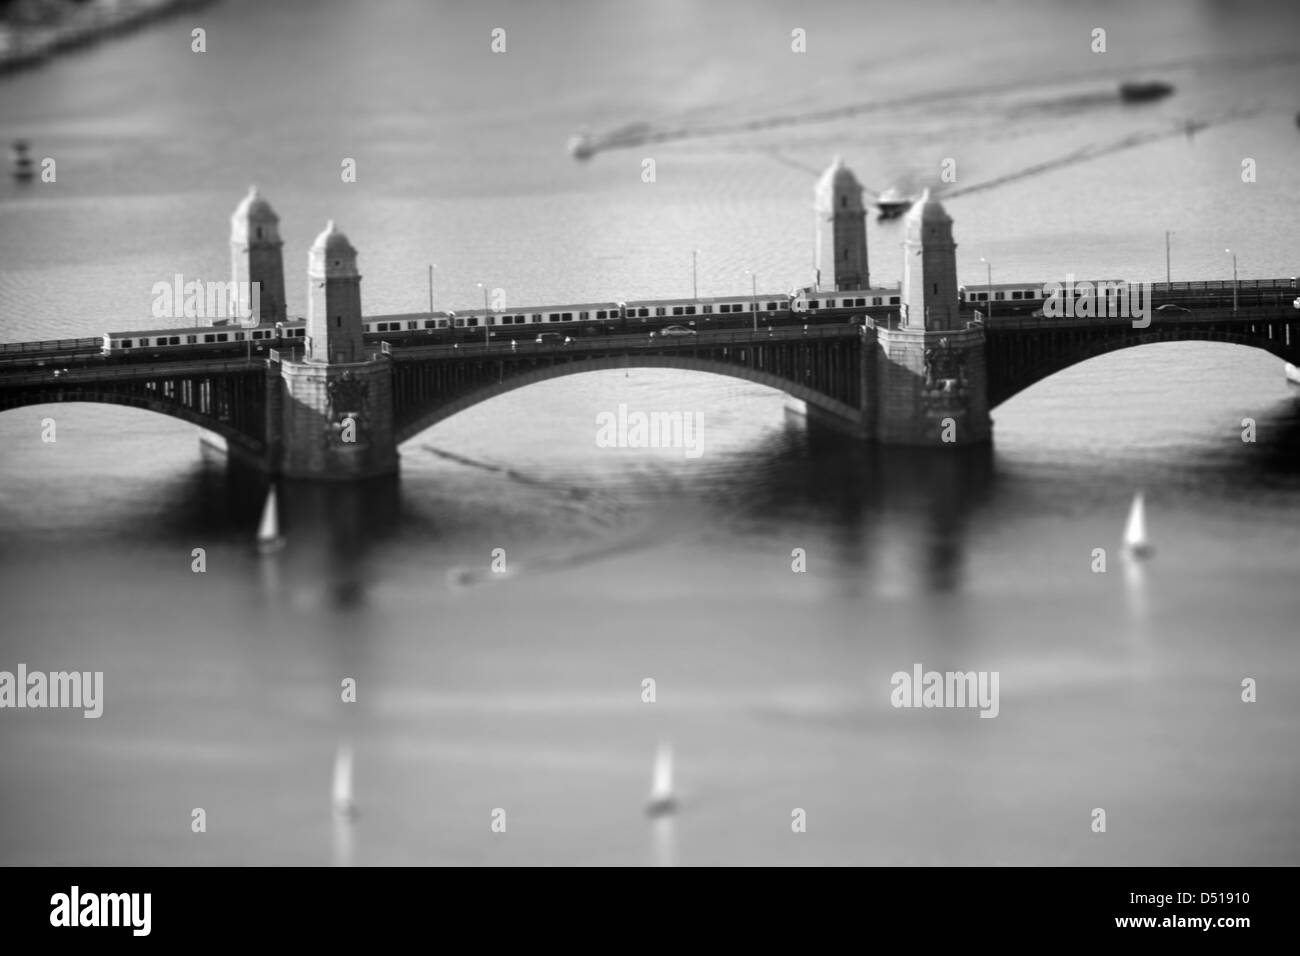 Miniatur-Version des Bostoner Longfellow Bridge Stockfoto